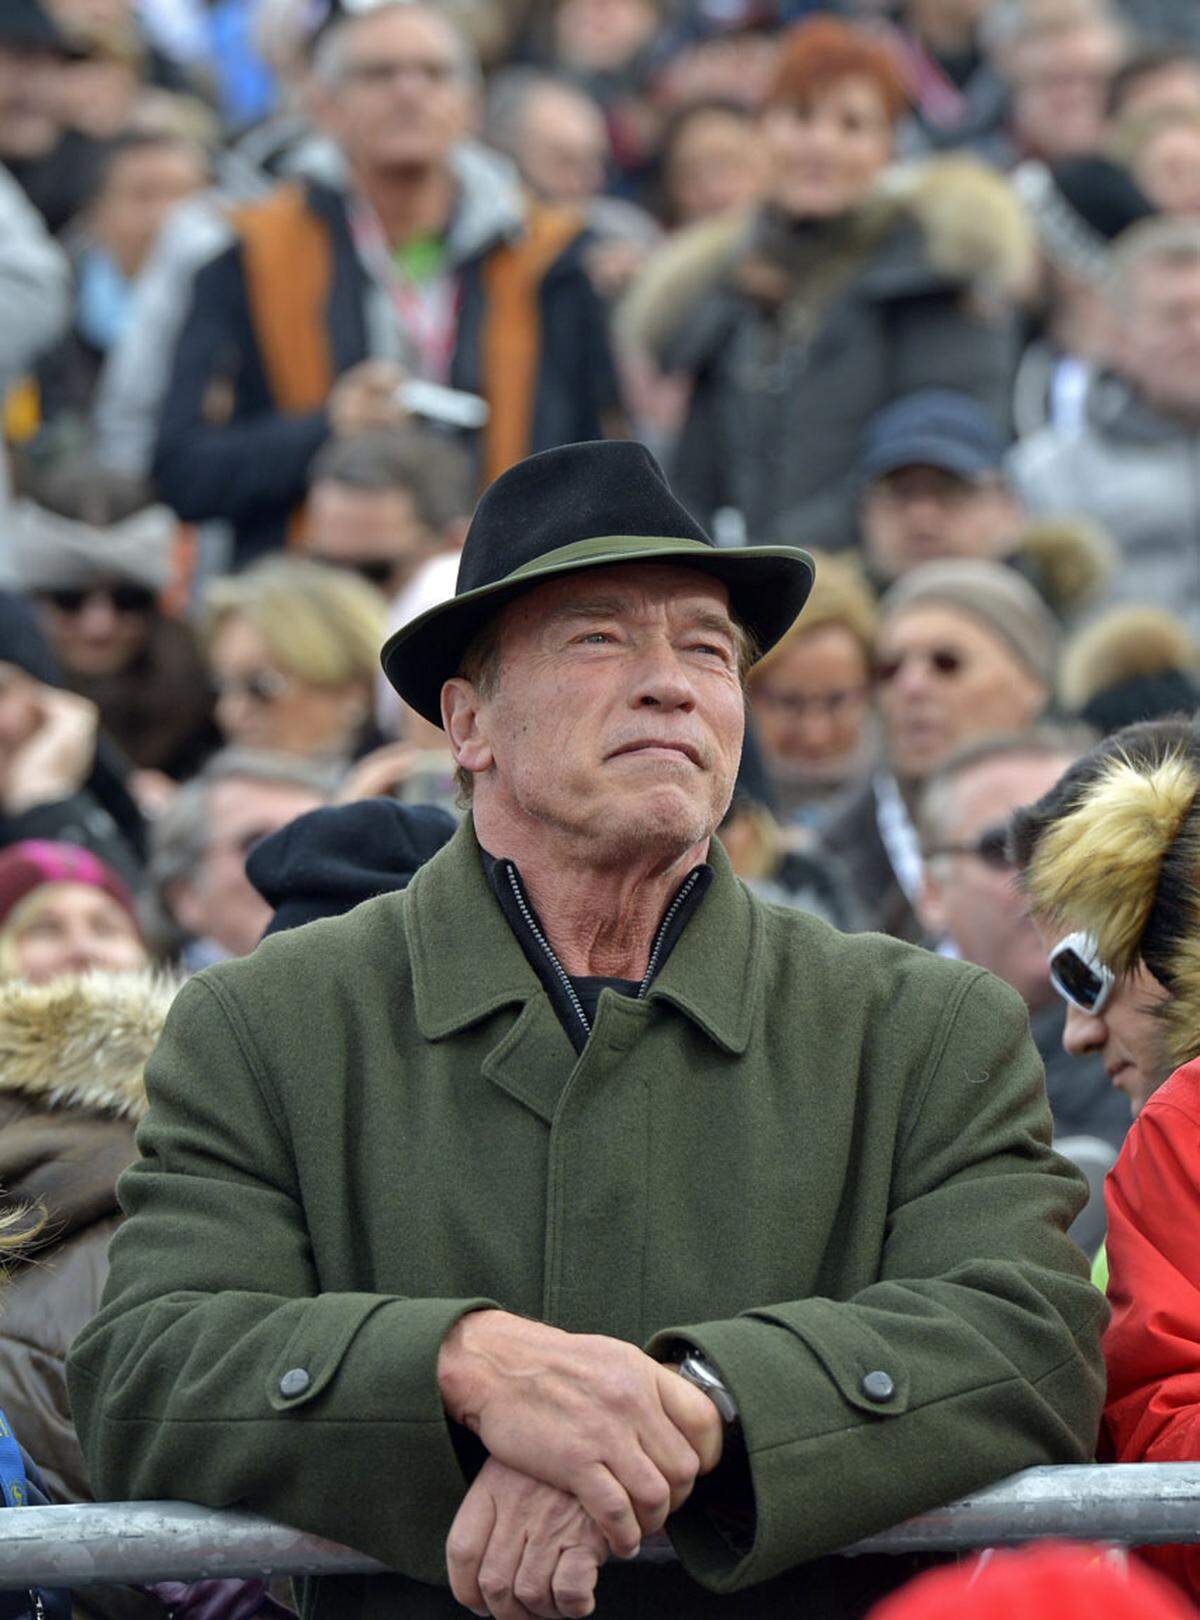 Es folgen weitere Bild der Hahnenkammrennen, hier beobachtet Arnold Schwarzenegger die ersten Fahrer. 